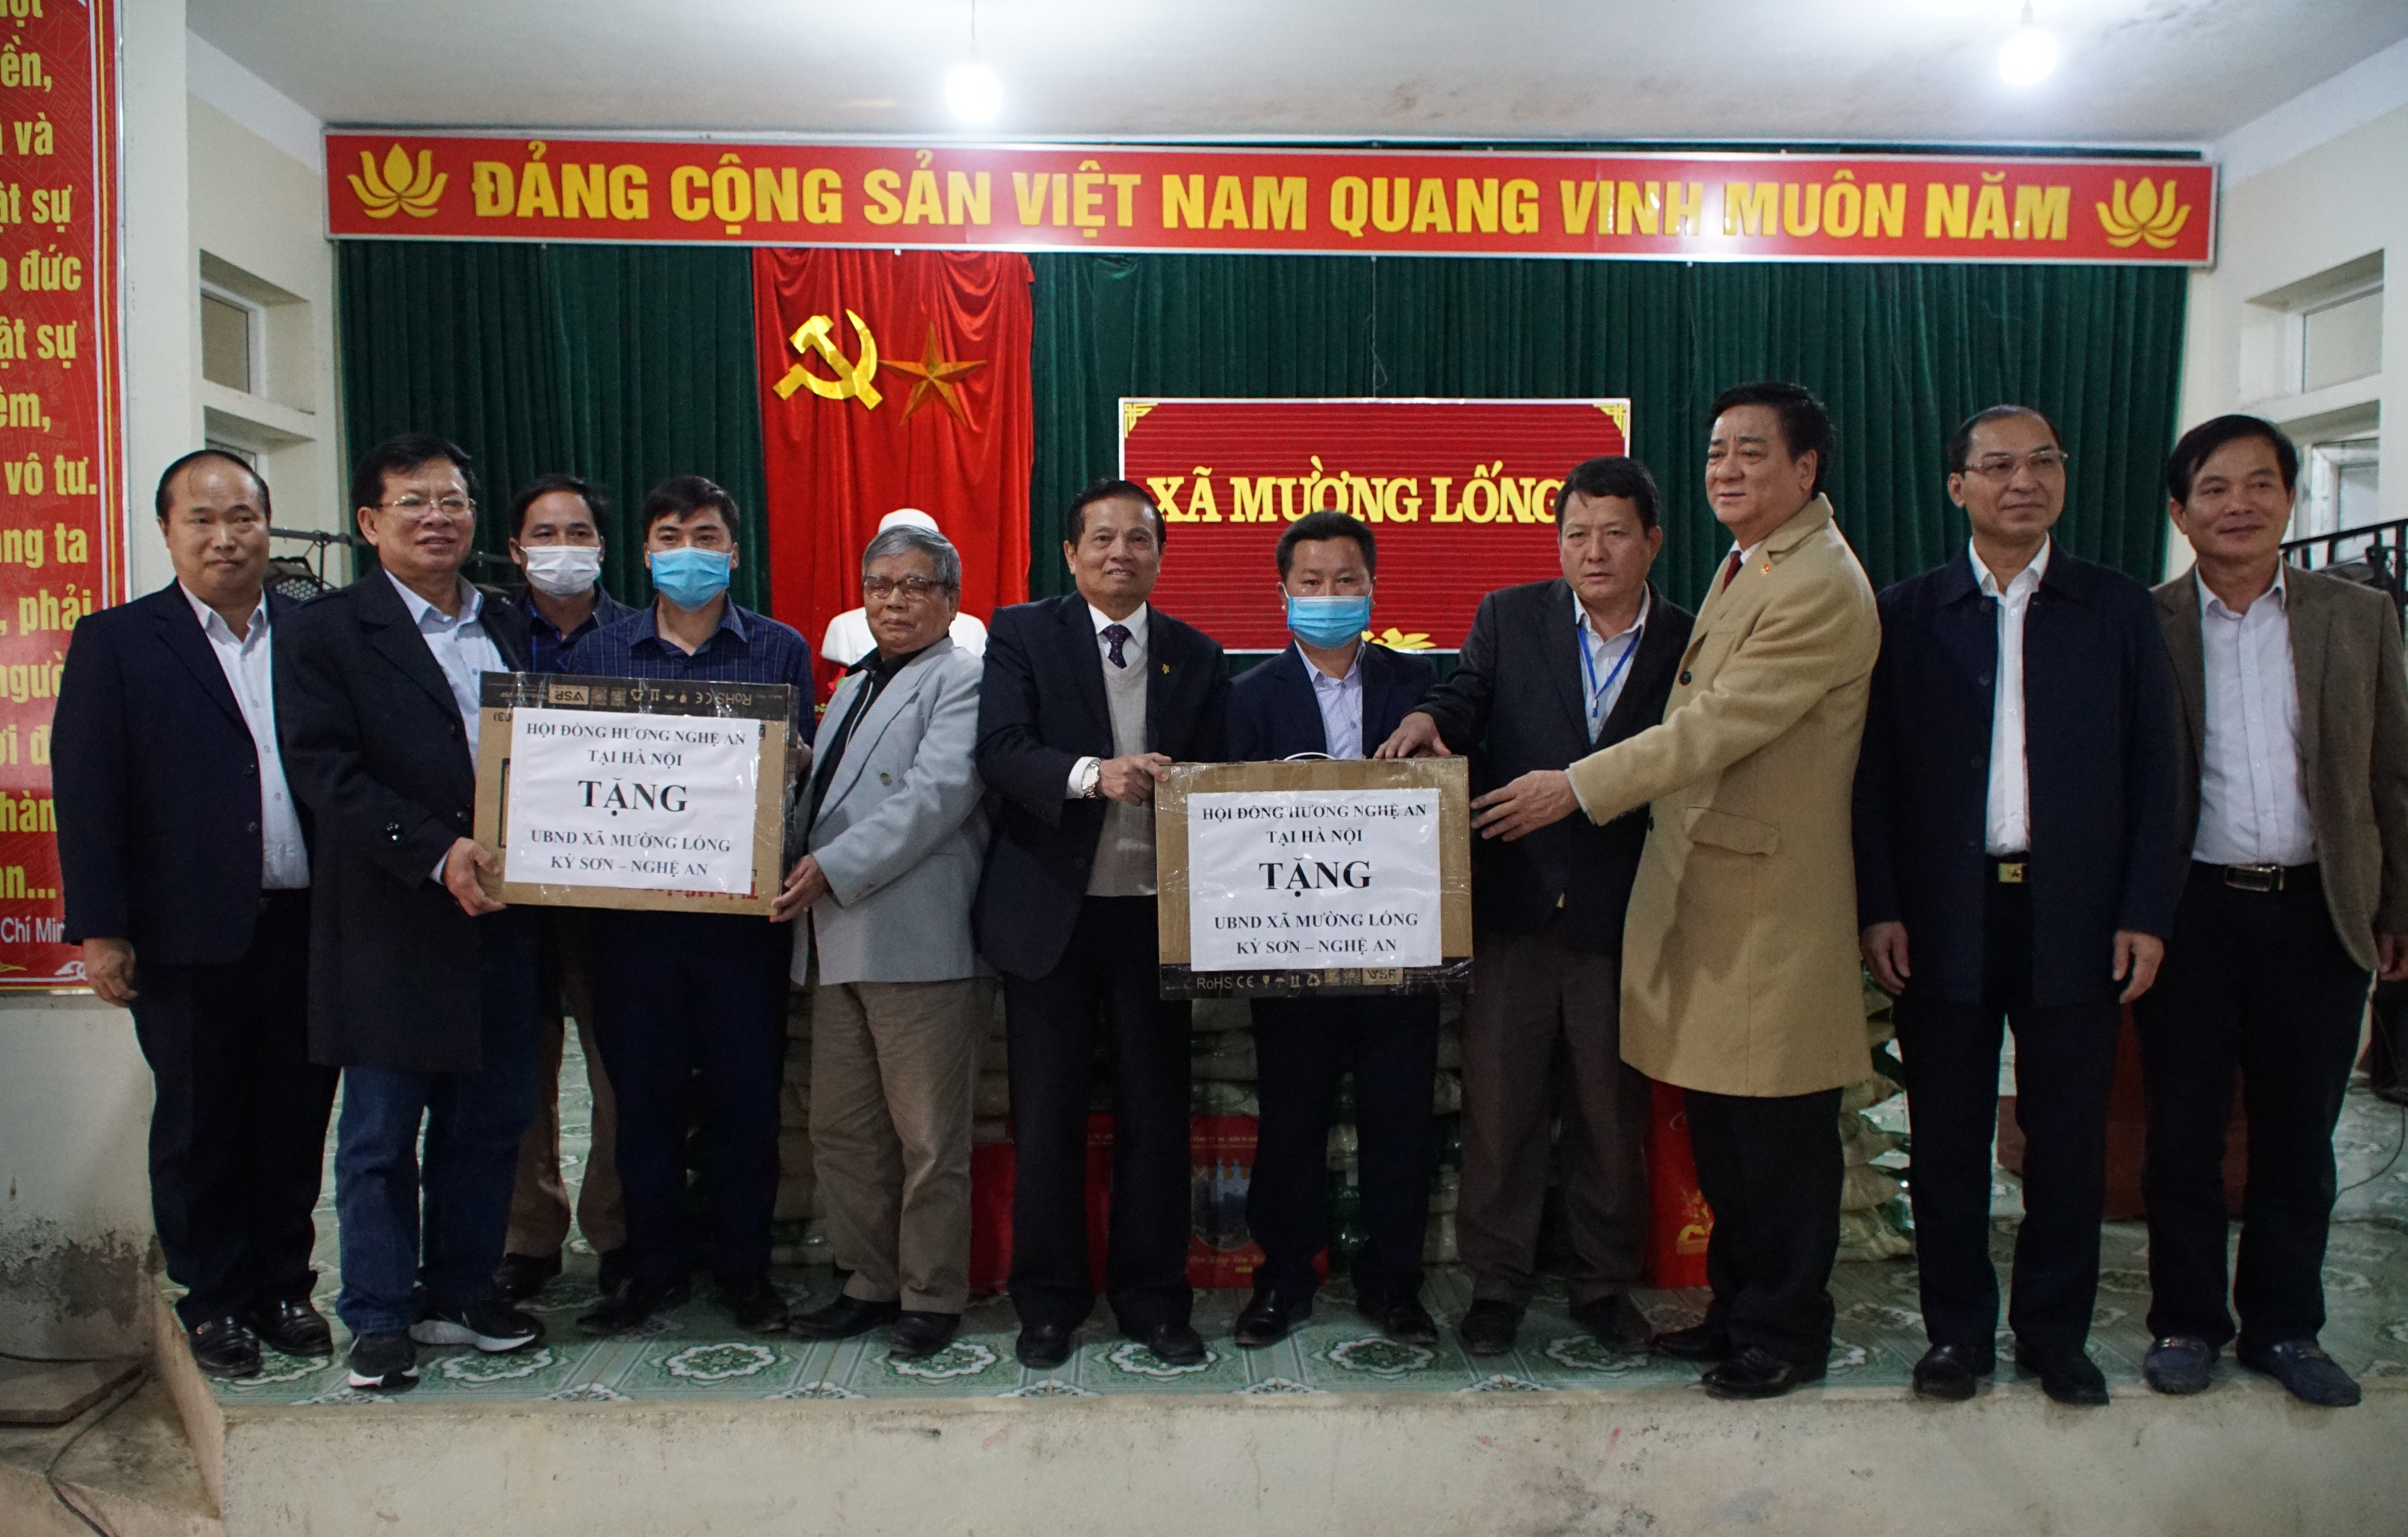 Hội đồng hương Nghệ An tại Hà Nội trao tặng máy tính cho lãnh đạo chủ chốt xã Mường Lống. Ảnh: Nguyễn Công Khang